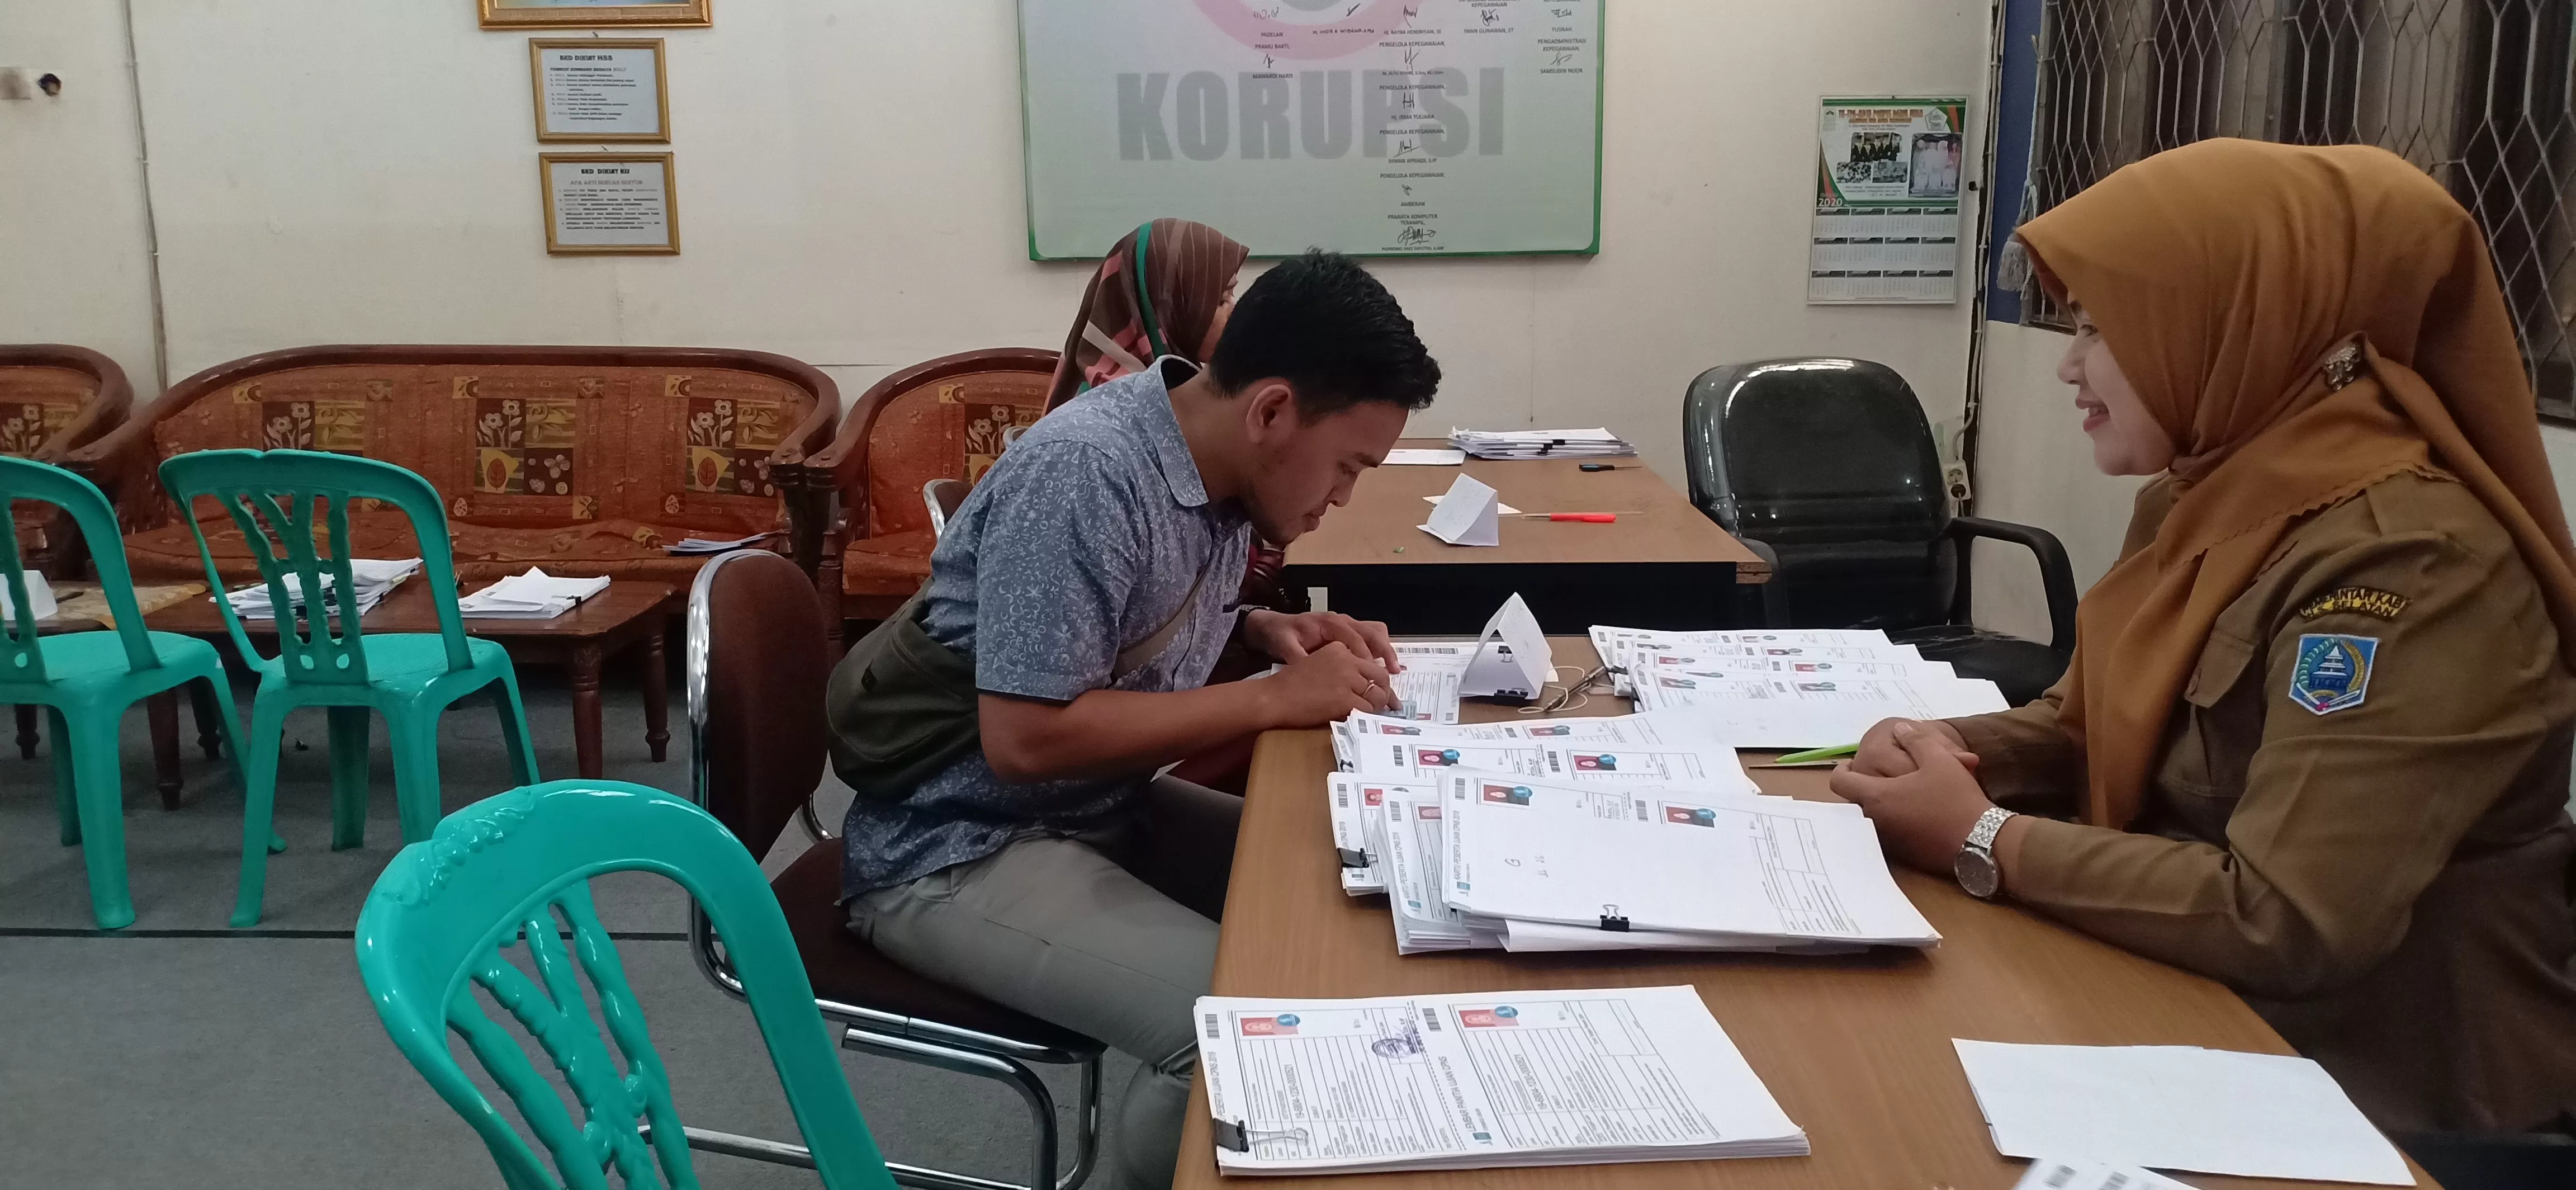 AMBIL : Masih ada ratusan peserta belum mengambil kartu ujian SKD di Kabupaten HSS. | FOTO: SALAHUDIN/RADAR BANJARMASIN